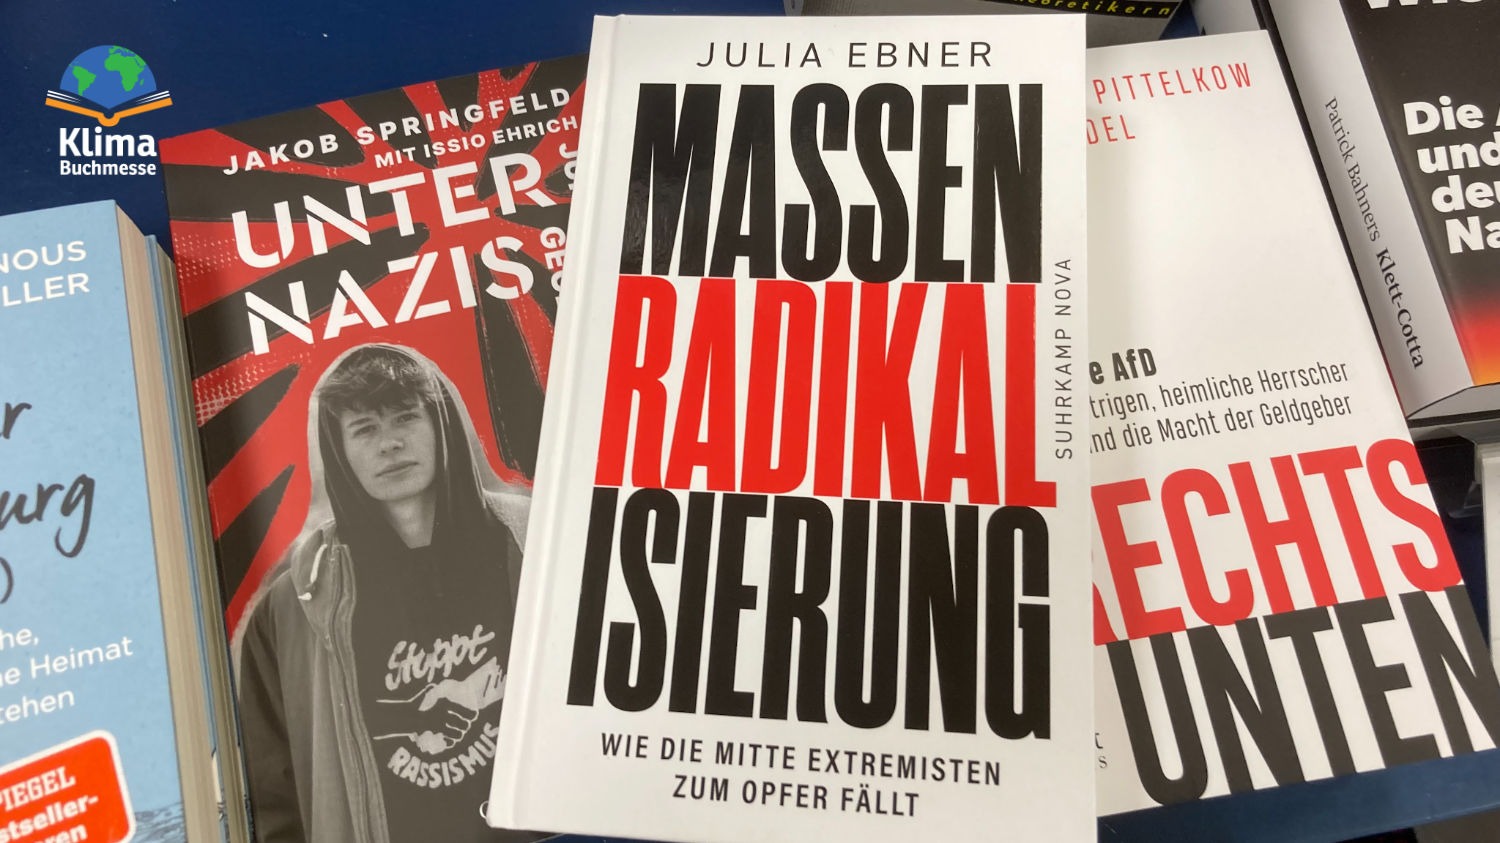 Das Buch "Massenradikalisierung" von Julia Ebner, Suhrkamp, liegt auf anderen Büchern mit Titeln wie "Unter Nazis" und Rechts unten".